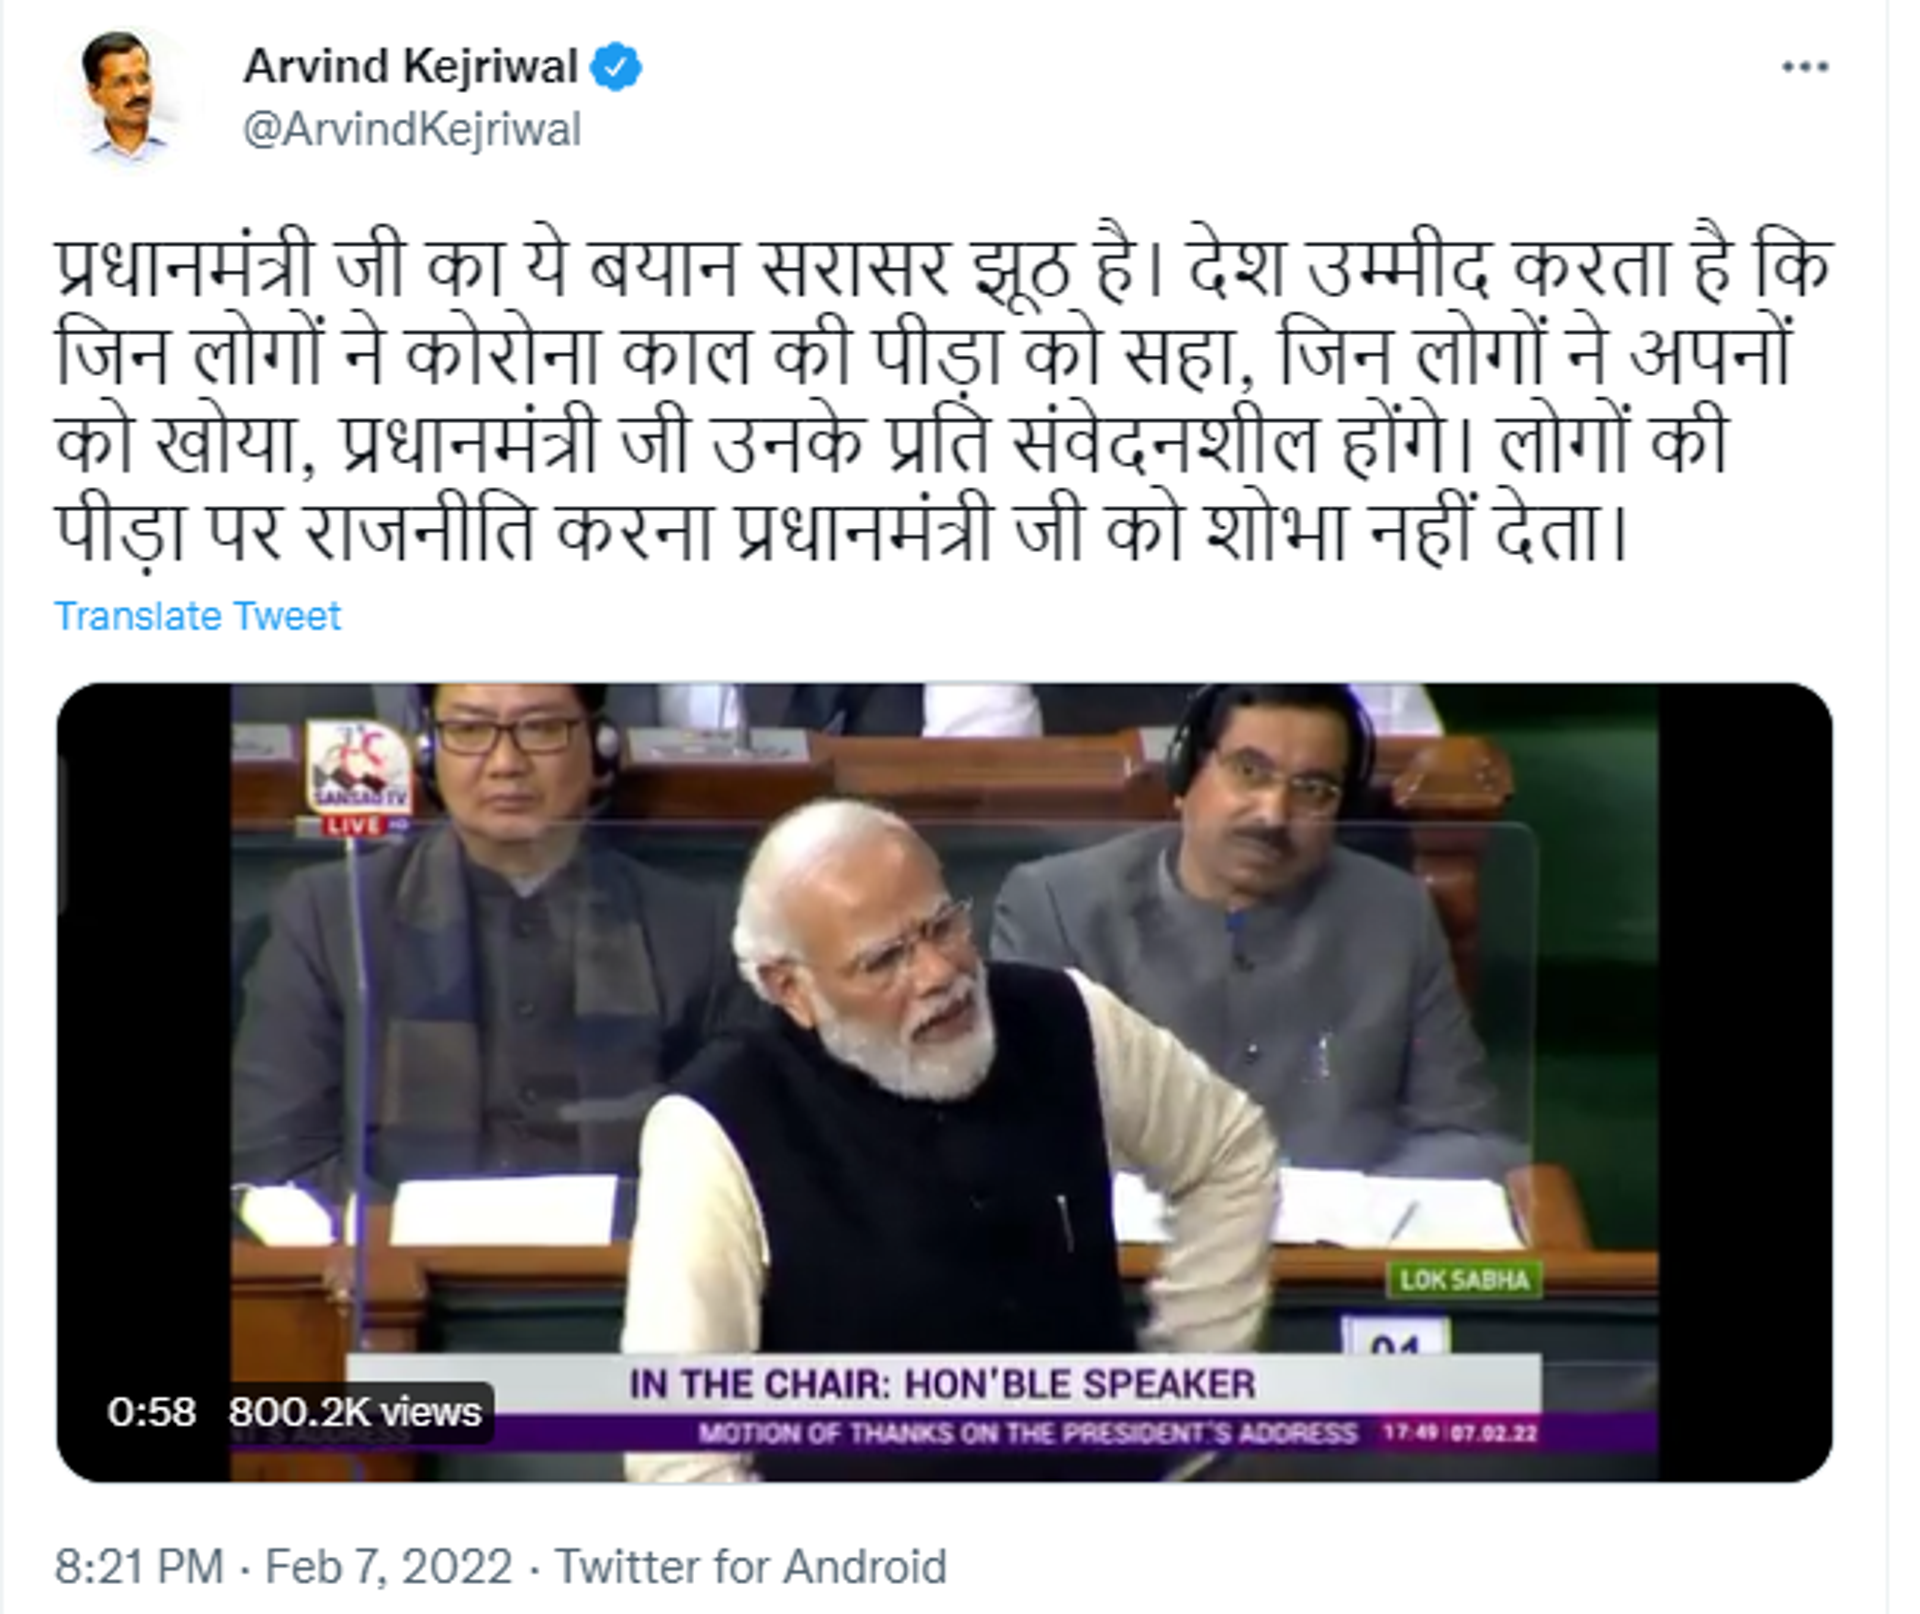 Arvind Kejriwal tweets about PM Modi's Statement in parliament. - Sputnik International, 1920, 08.02.2022